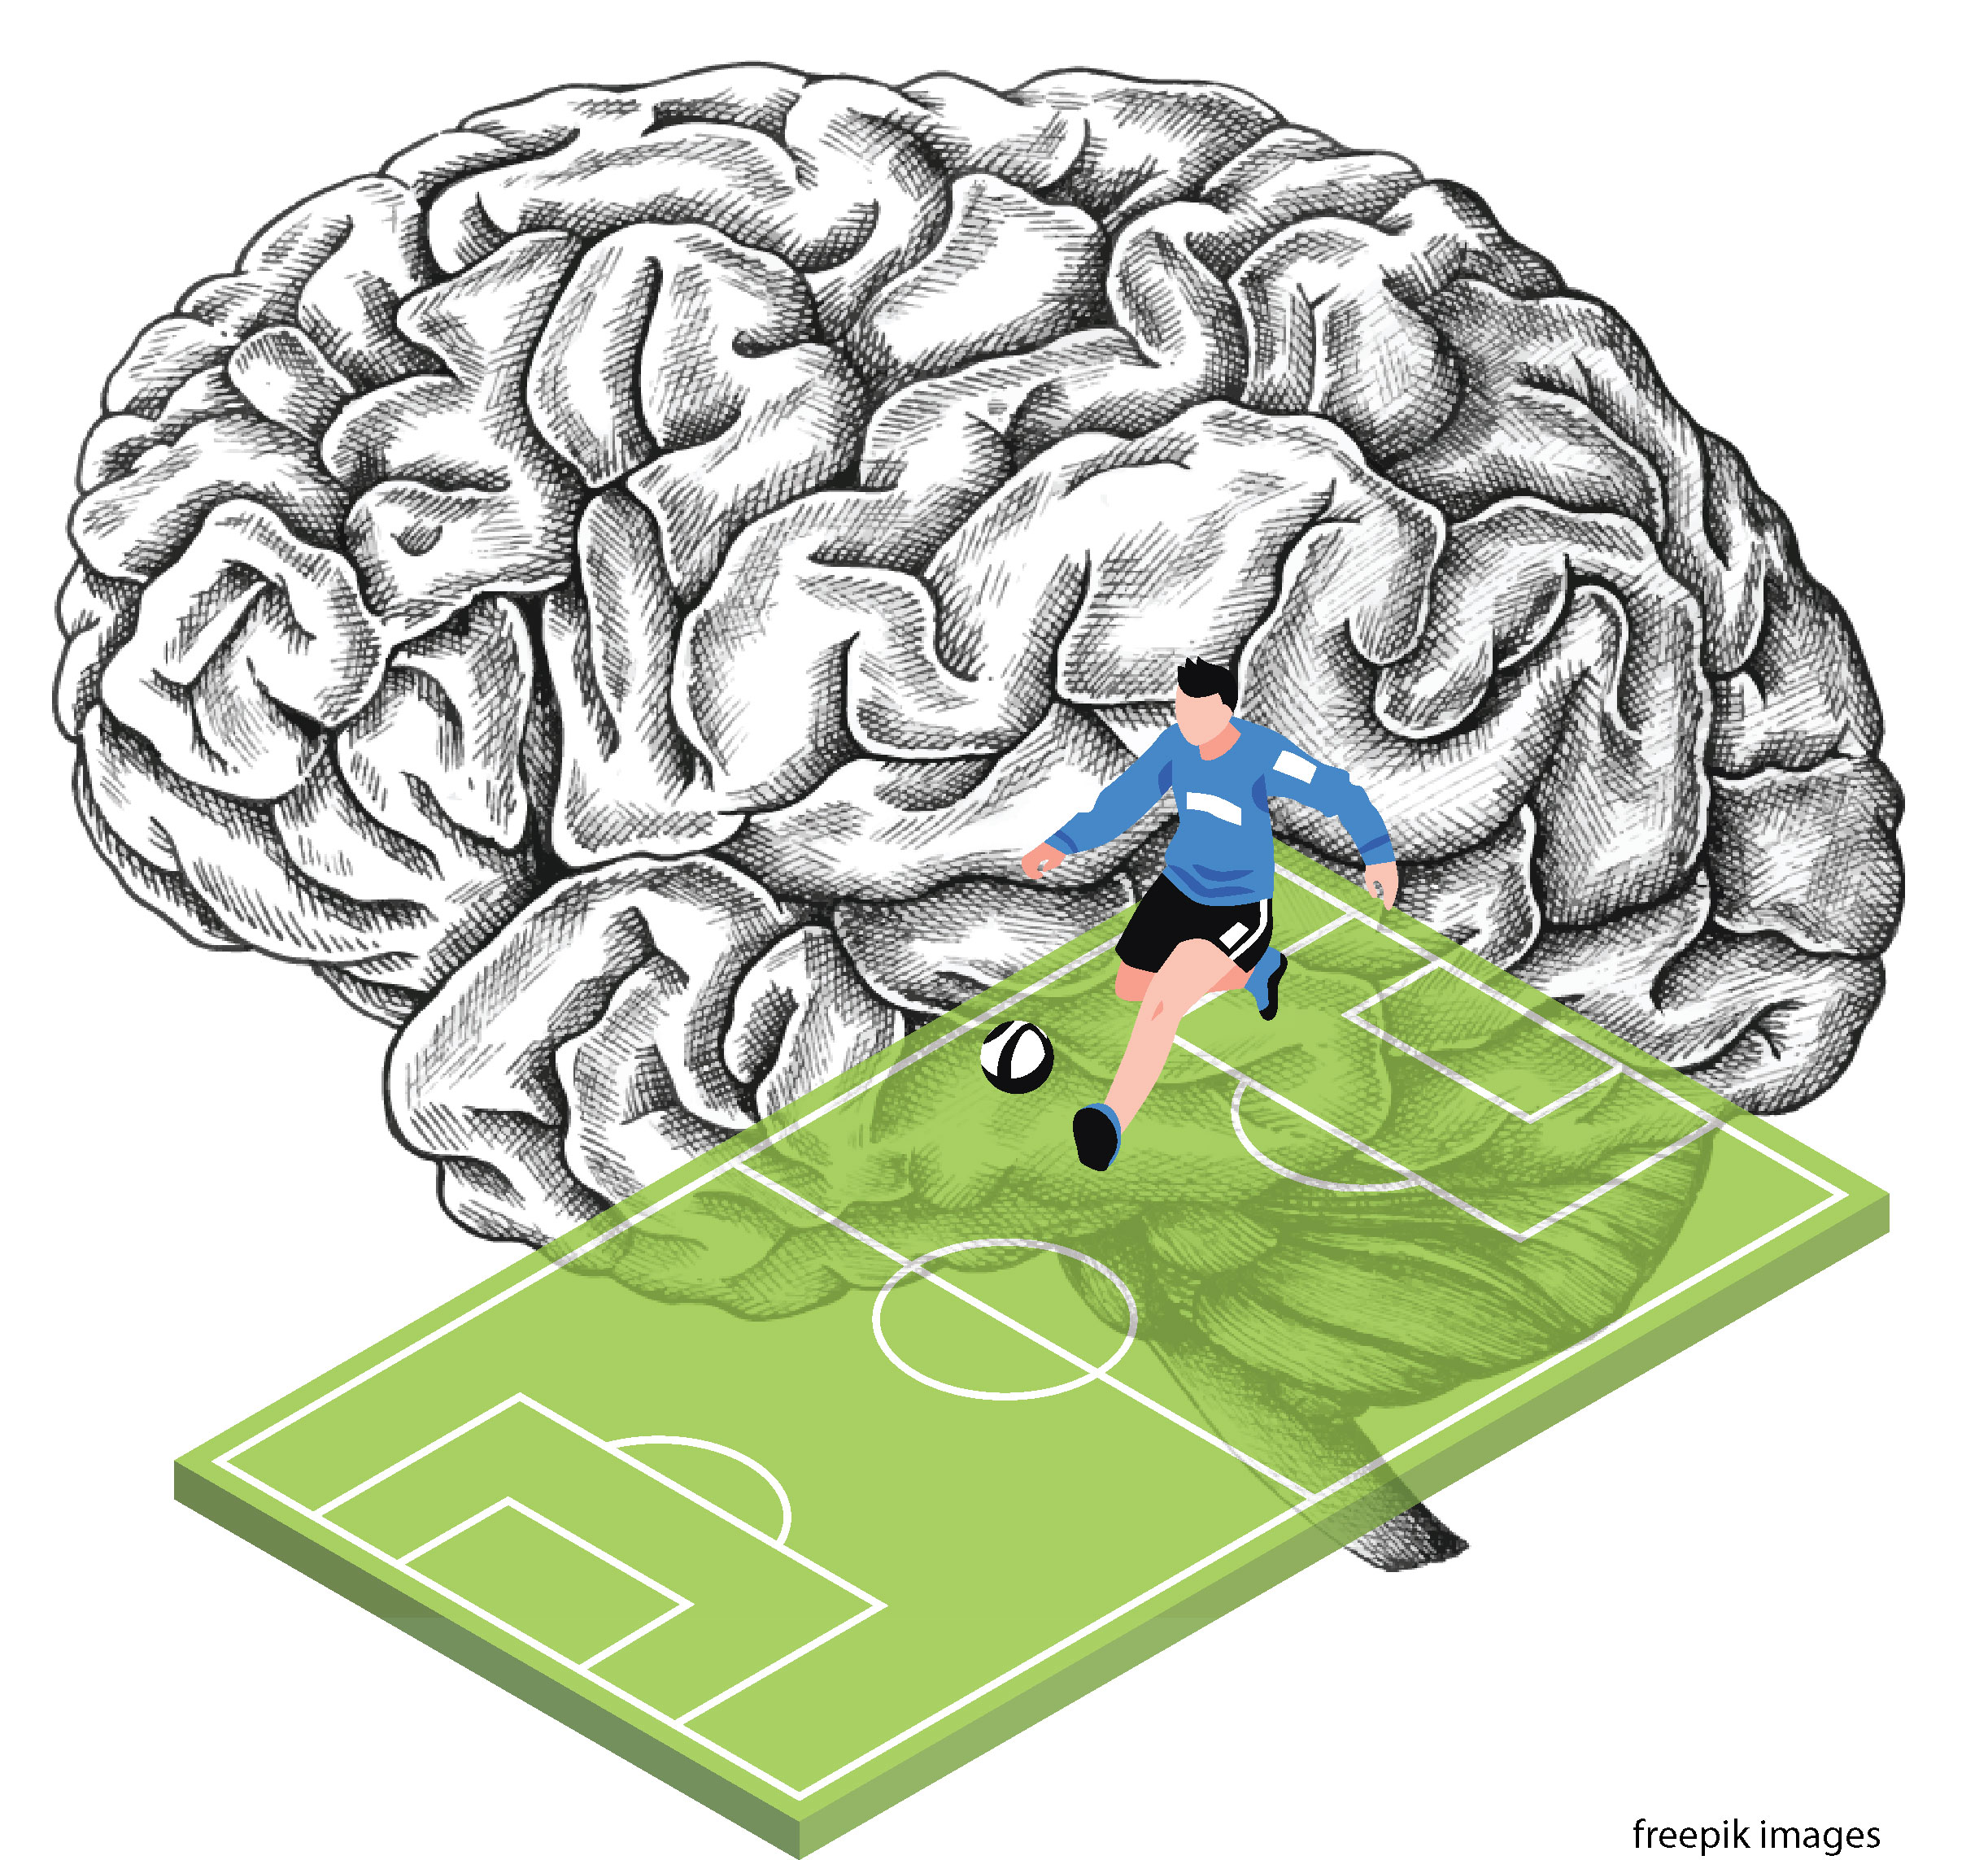 Como o cérebro dos jogadores de futebol é diferente do de outros